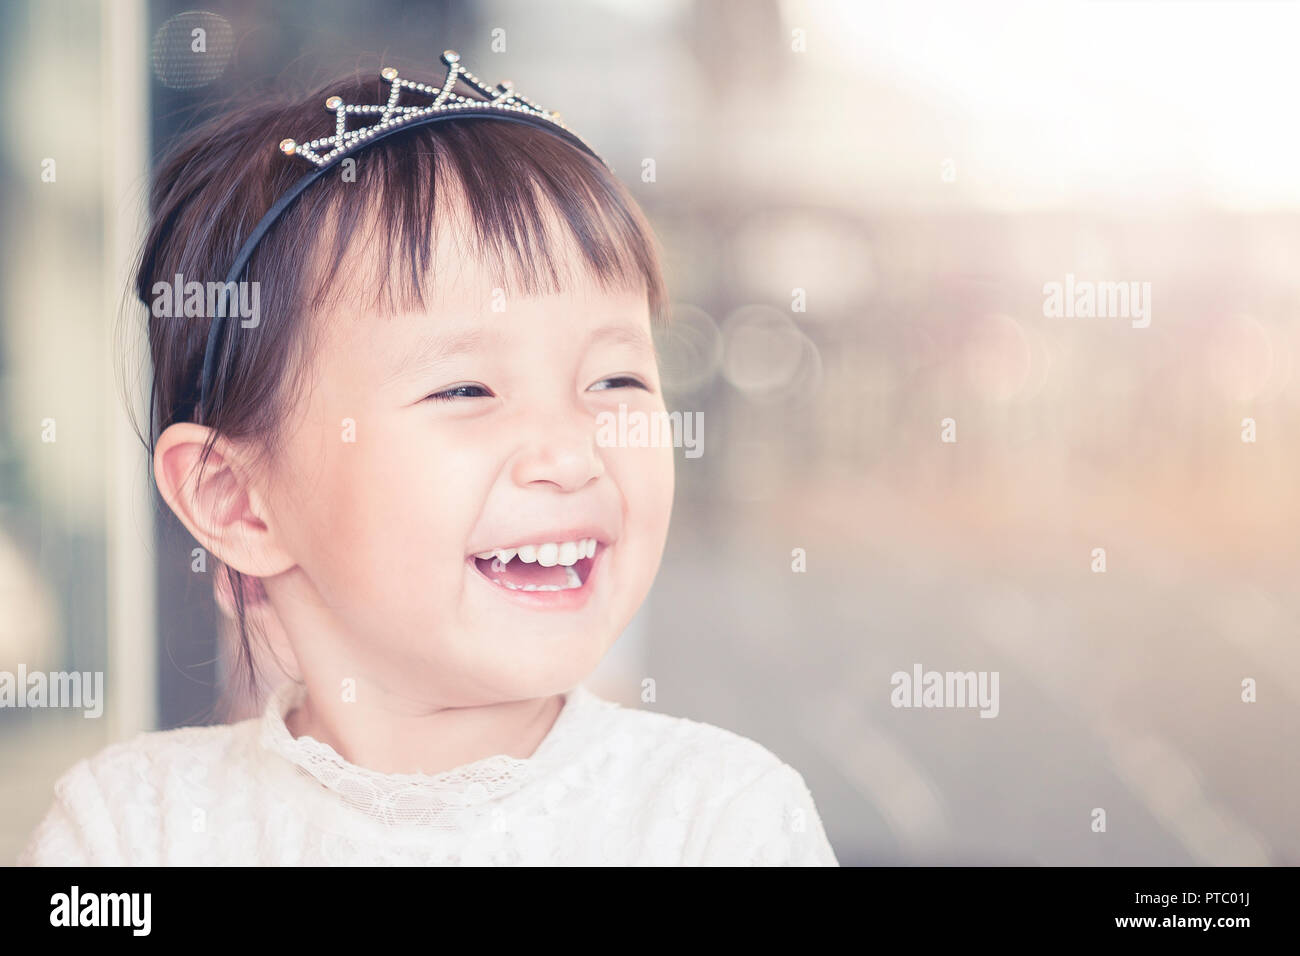 Kleine Mädchen lustig lächelndes Gesicht, Portrait von freudiger asiatische Kind bezaubernd schöne Frauen Mädchen Stockfoto